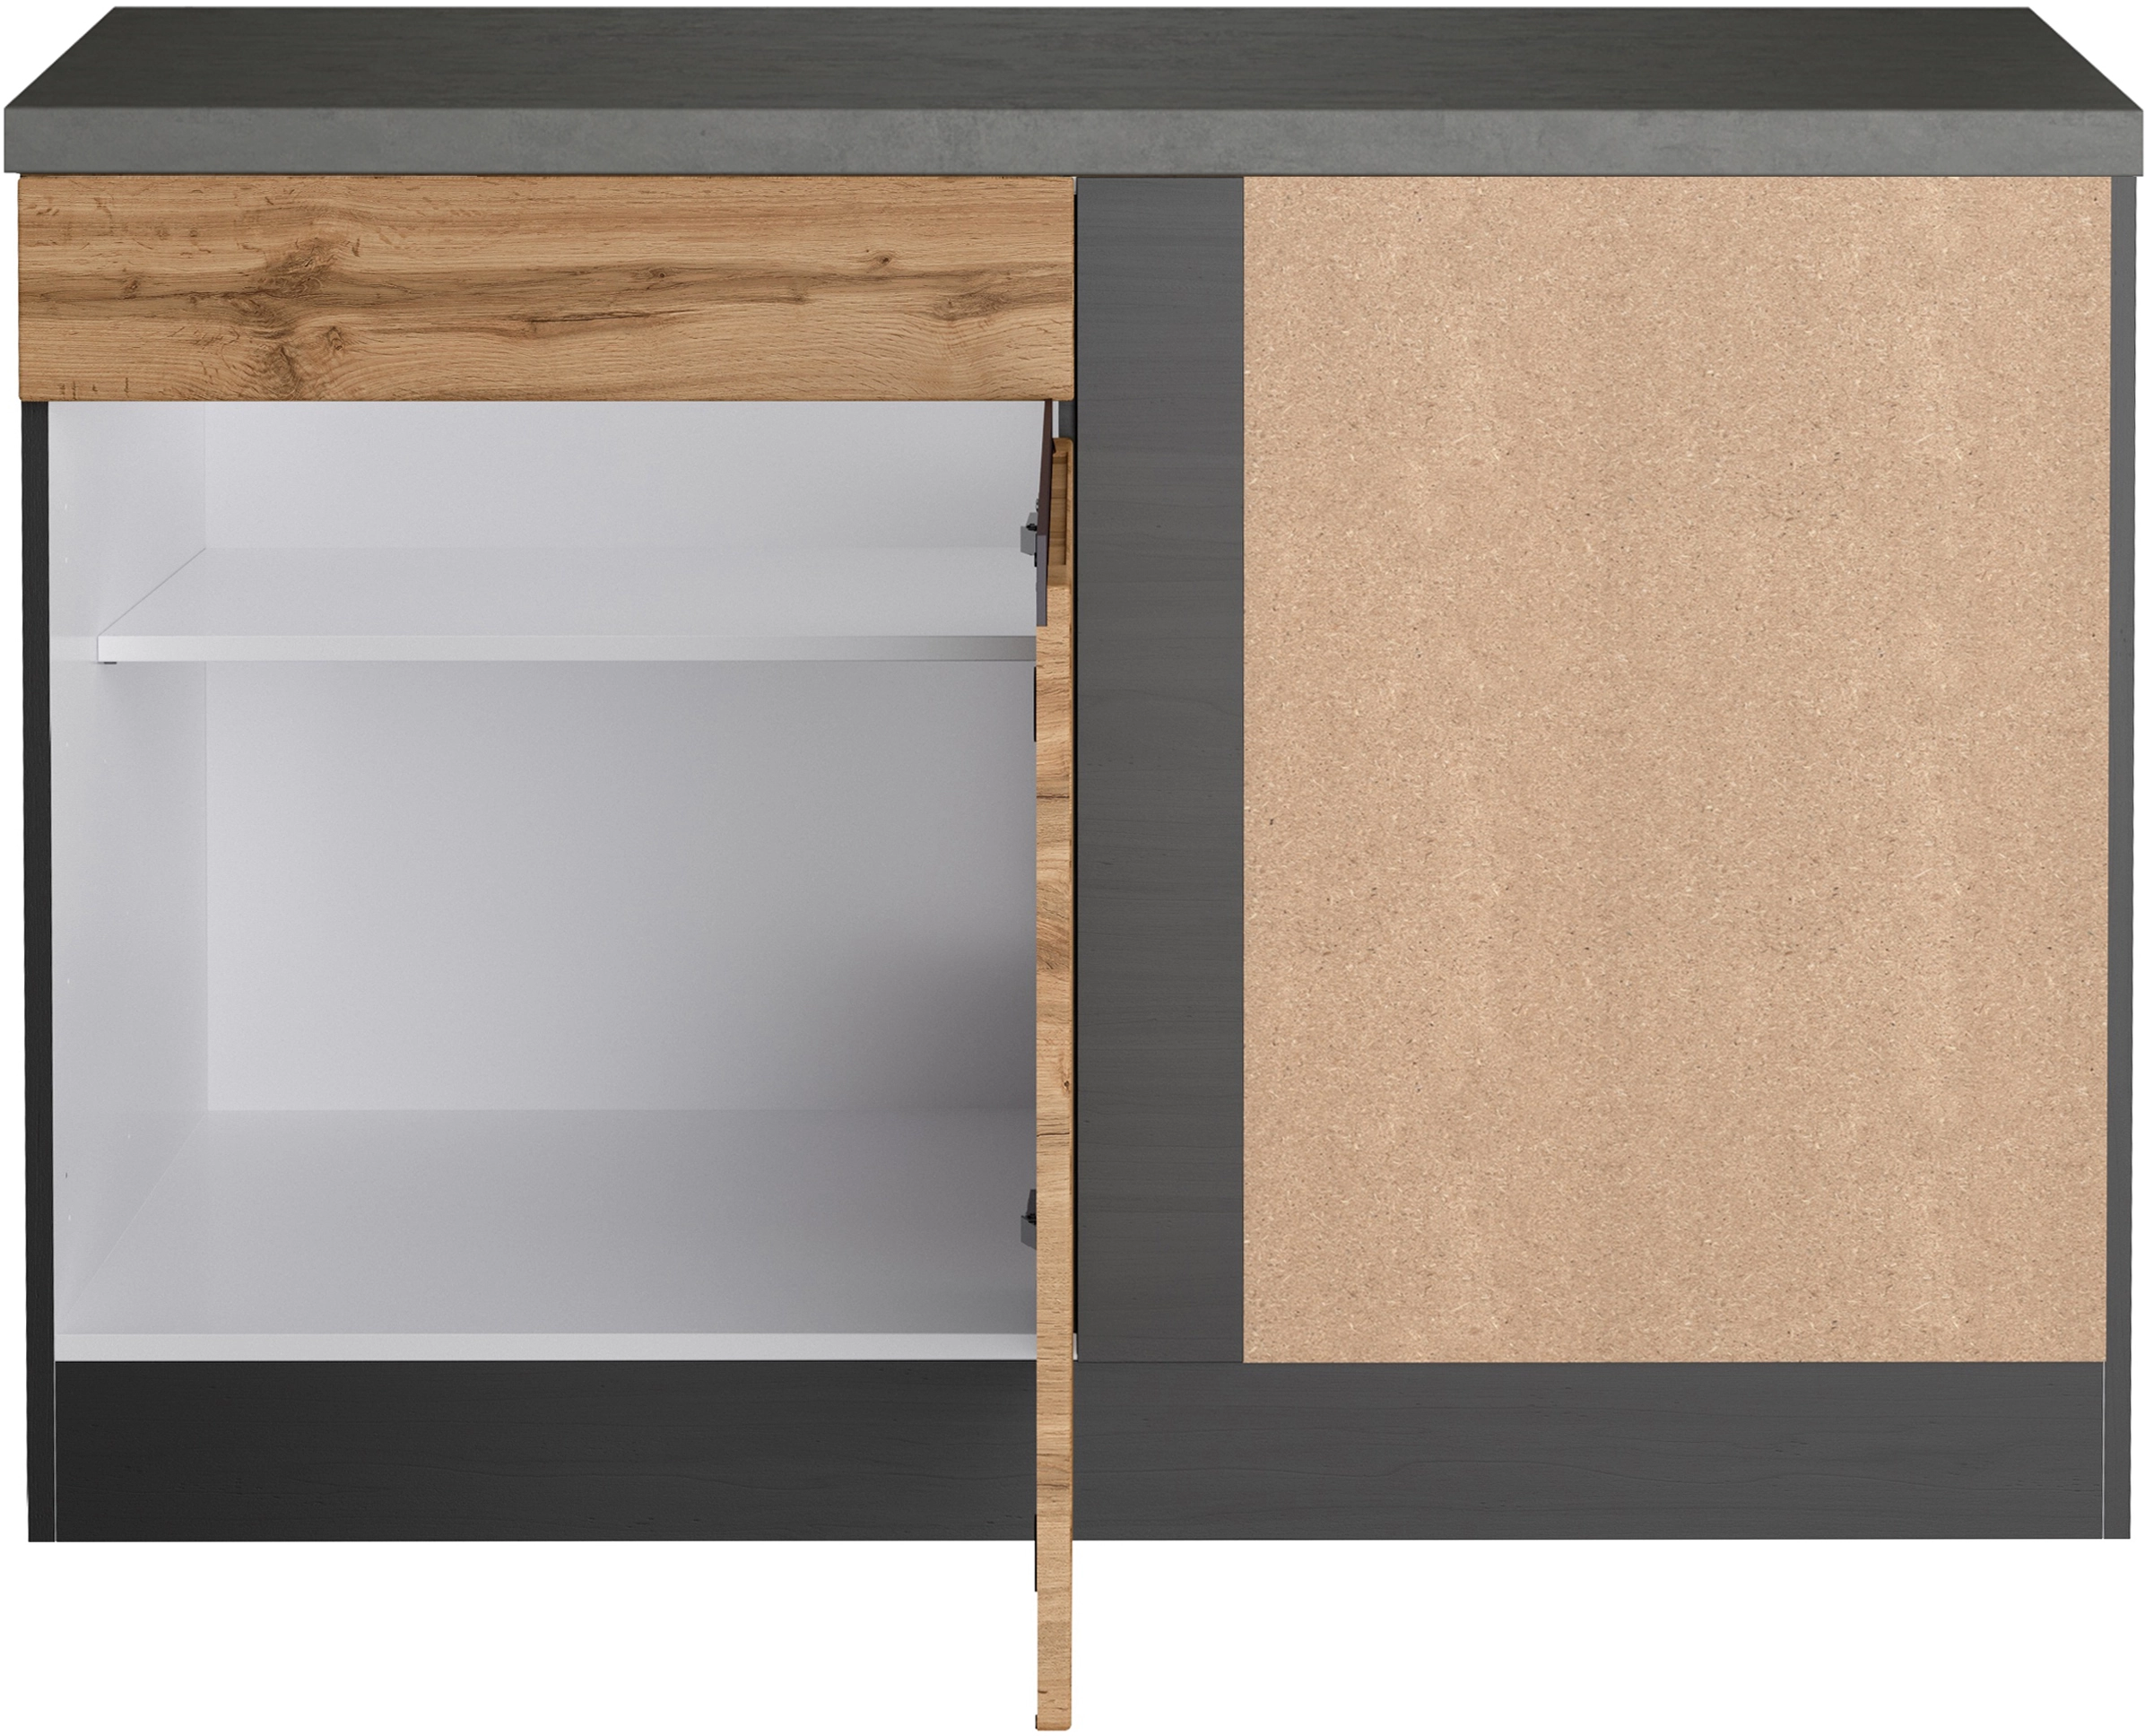 Held Möbel Küchen-Eckschrank OBI 120 cm bei Wotaneiche/Graphit kaufen Turin